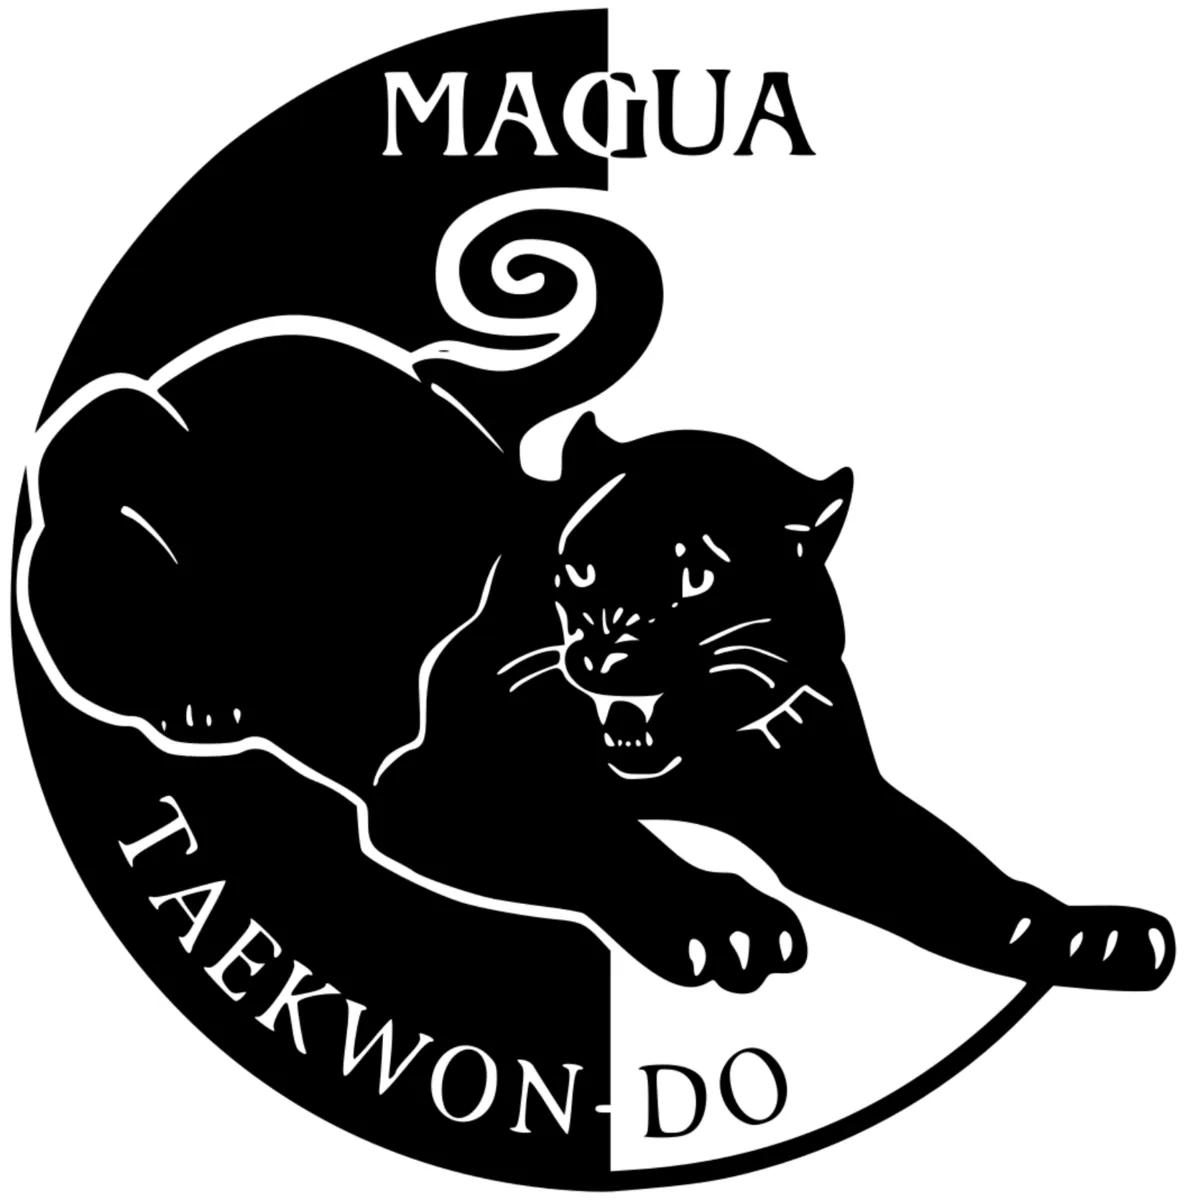 Magua Taekwon-Do logo